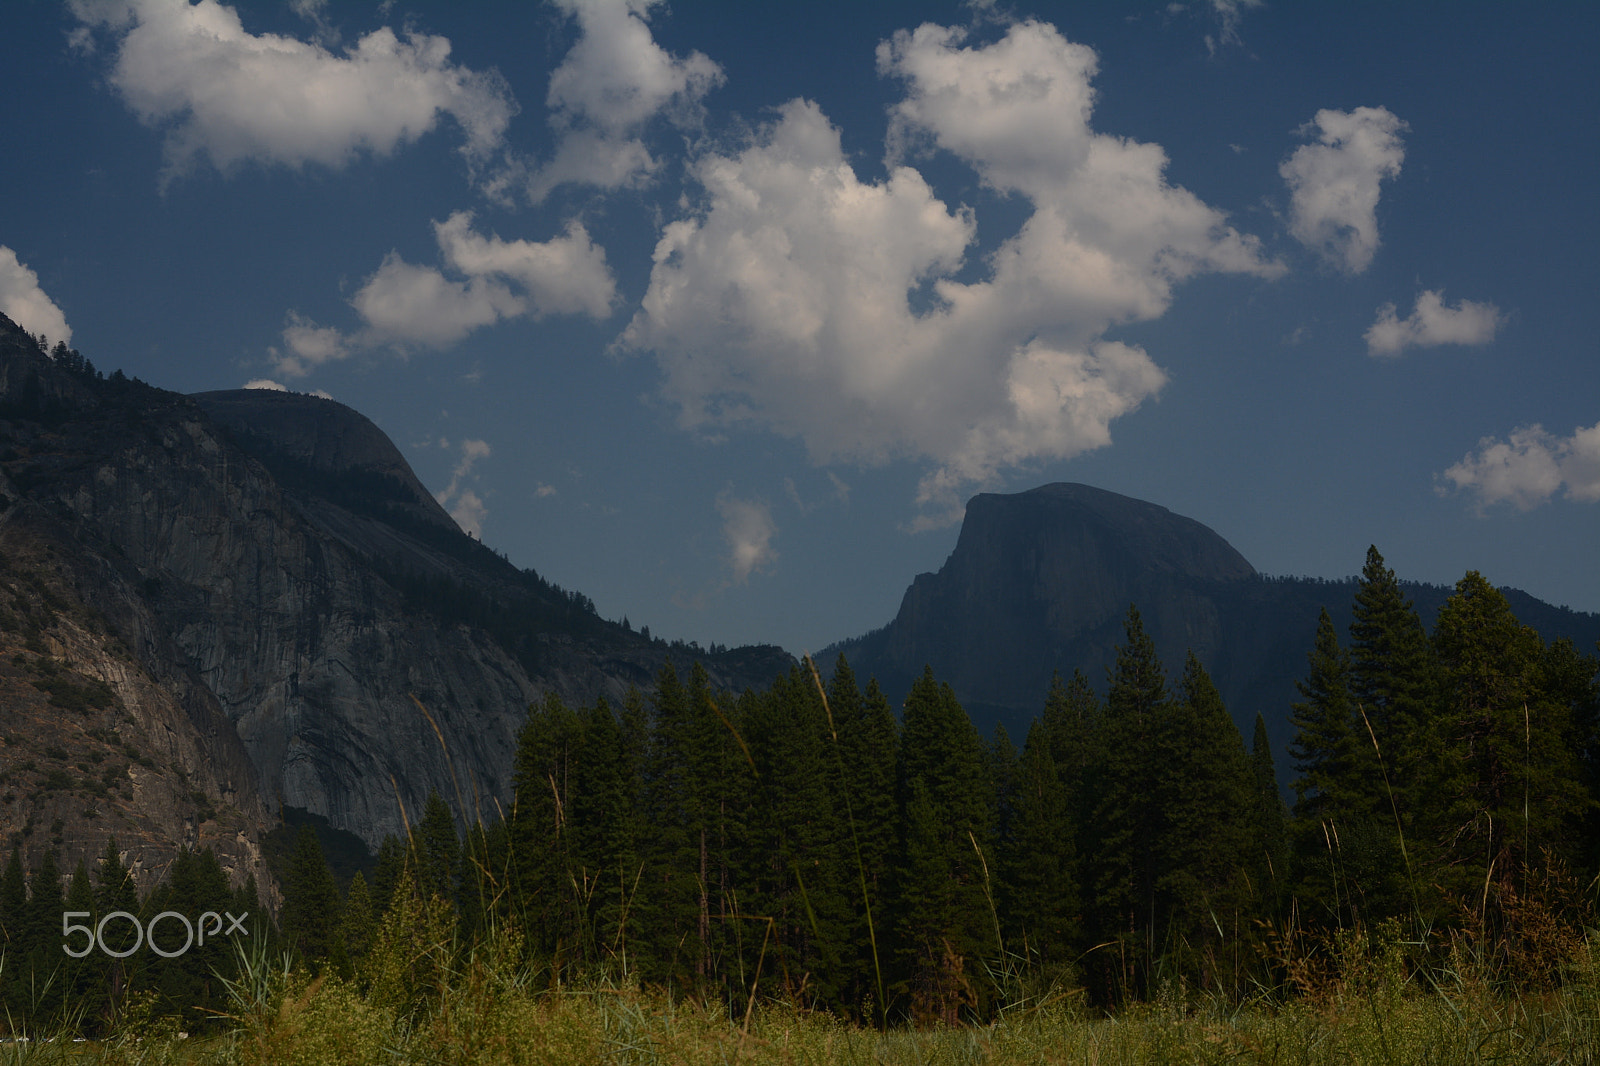 AF Zoom-Nikkor 28-80mm f/3.5-5.6D sample photo. Yosemite - half dome photography